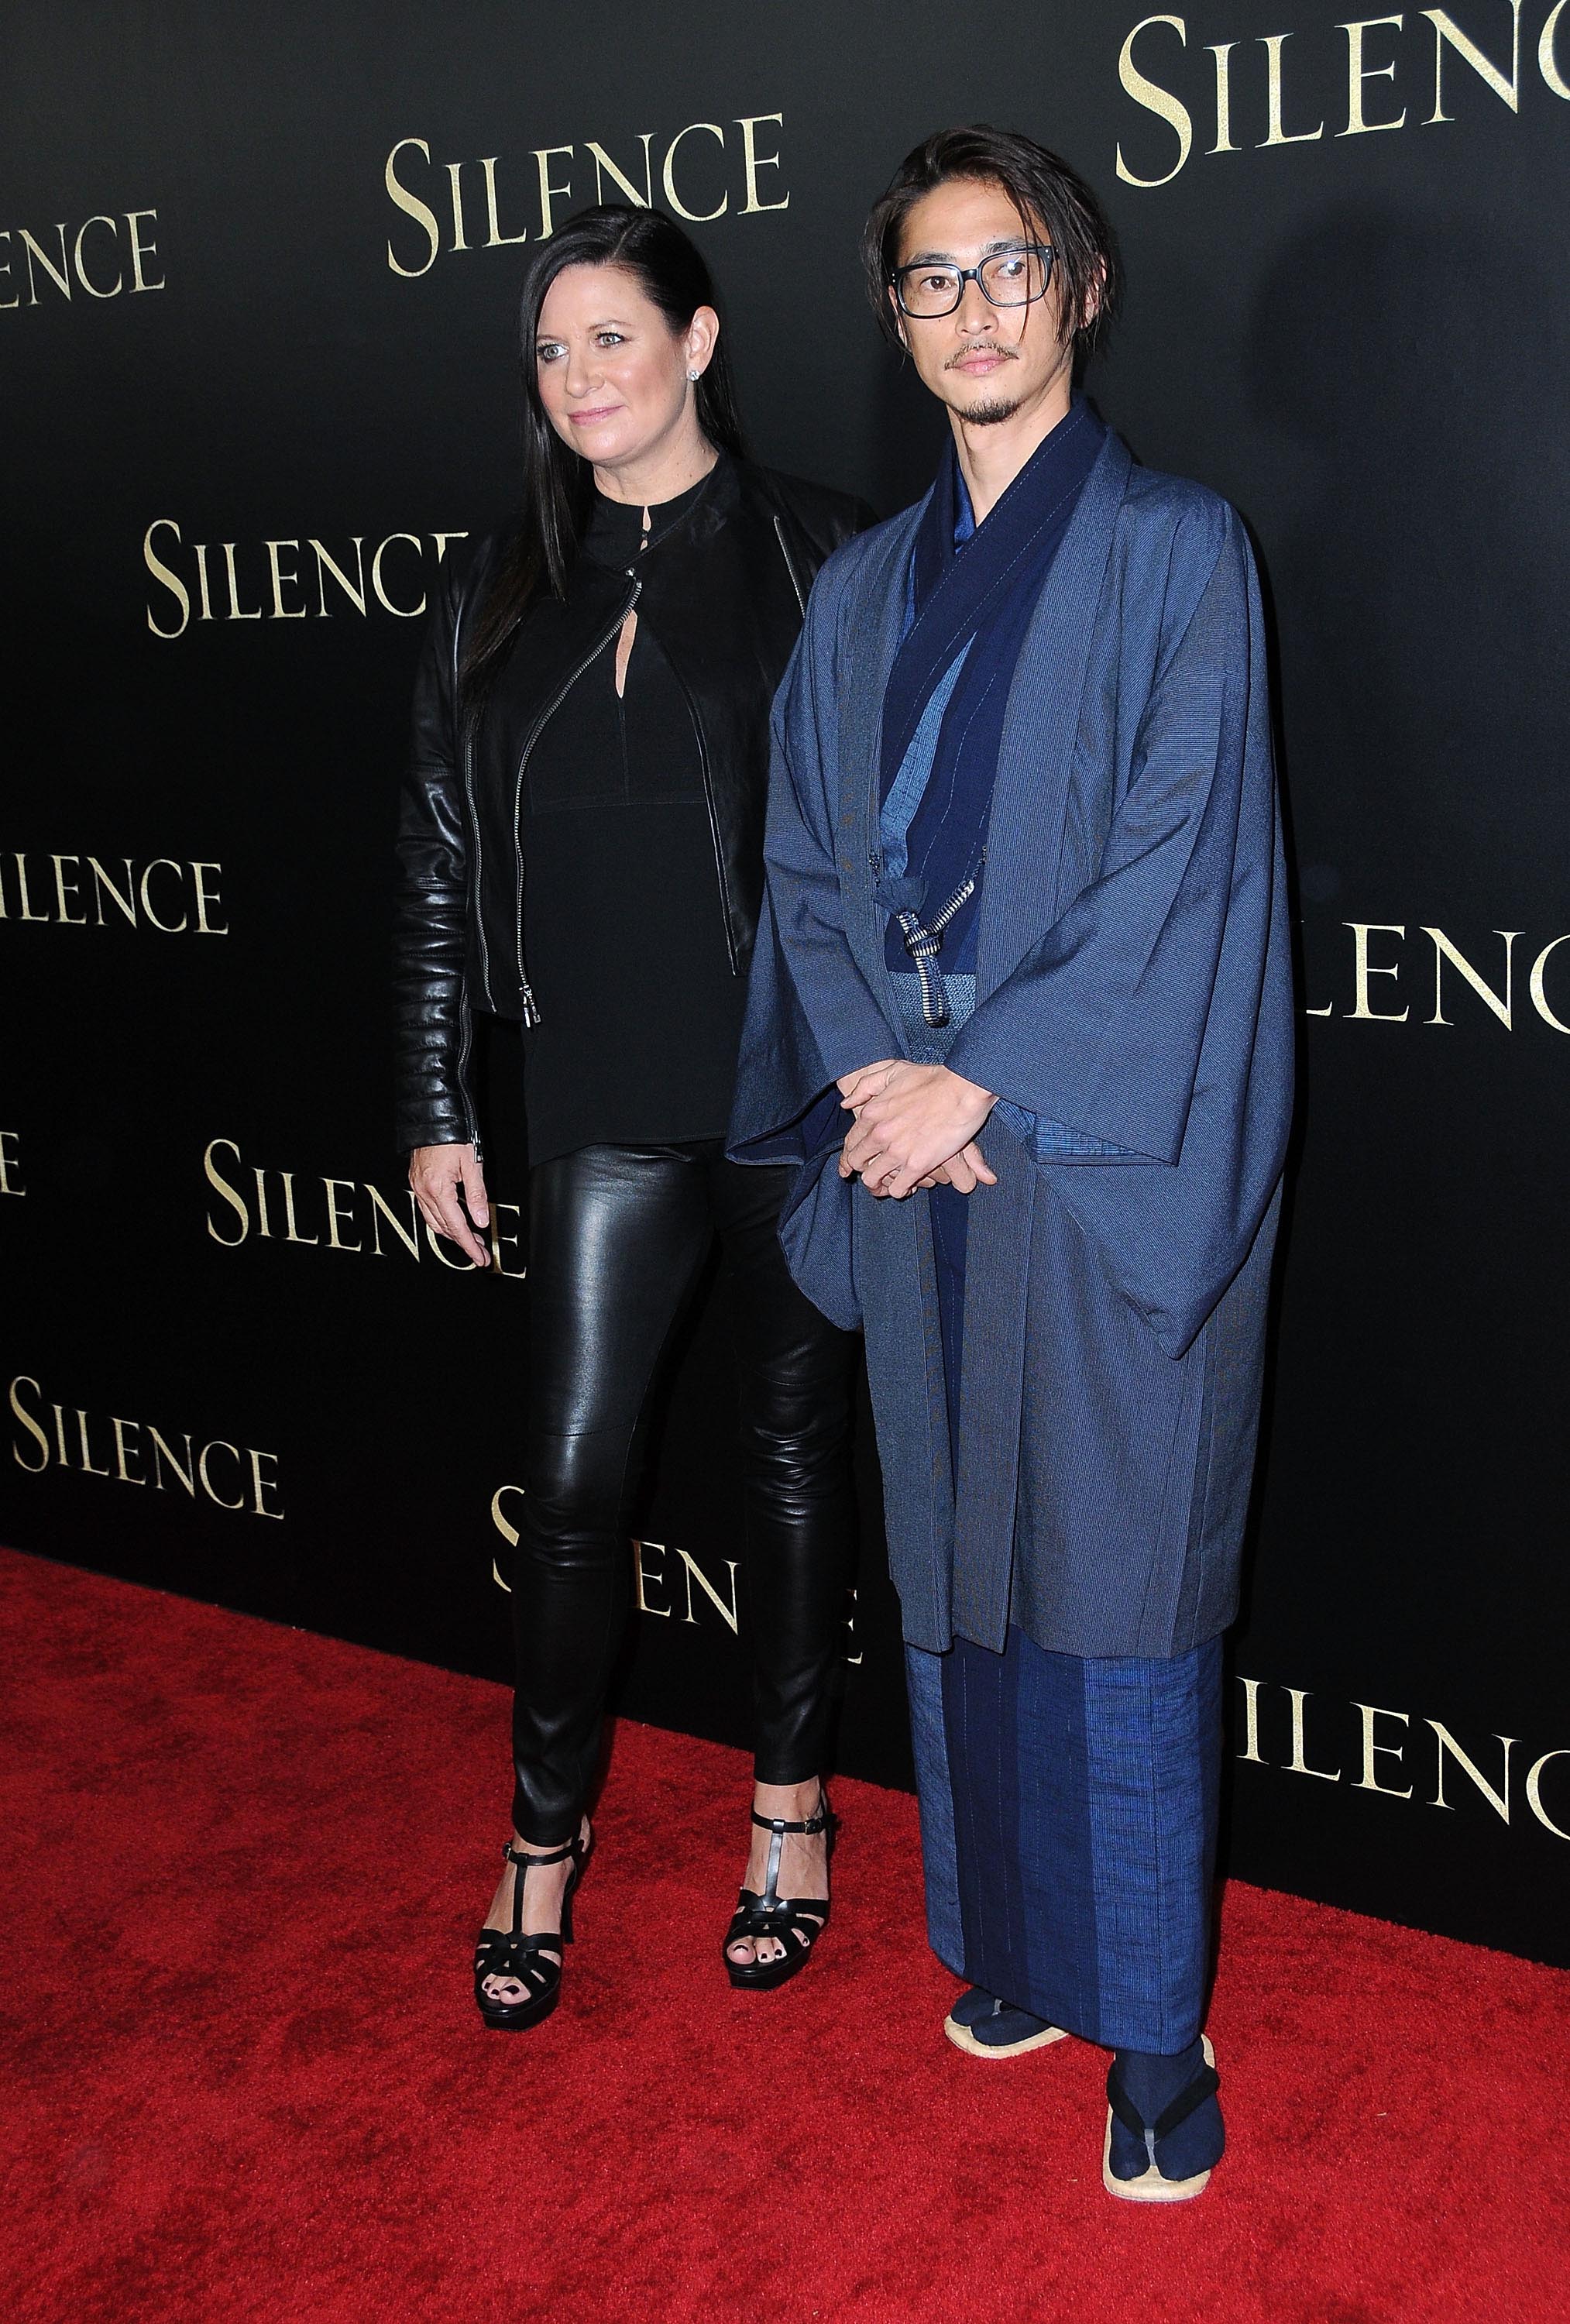 Emma Tillinger Koskoff attends the premiere of Silence